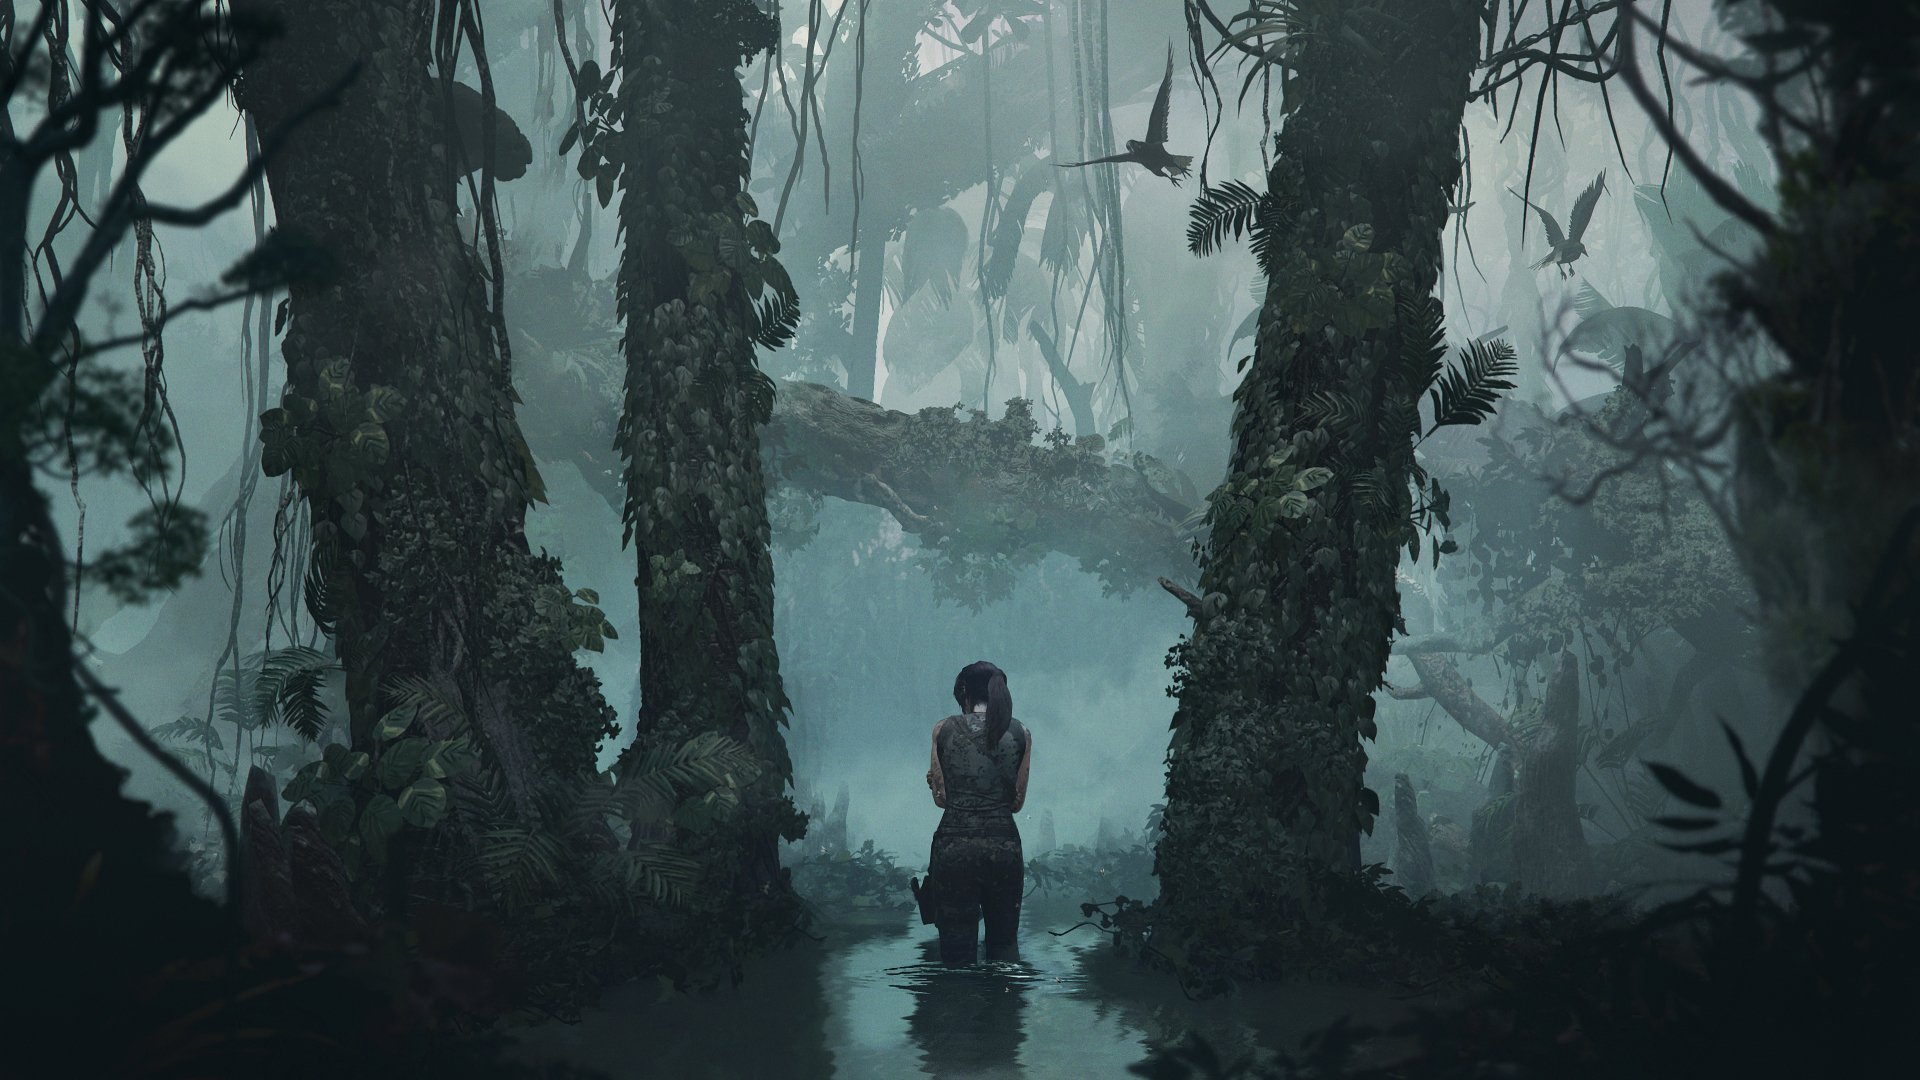 Papeis de parede Lara Croft: Tomb Raider Filme baixar imagens